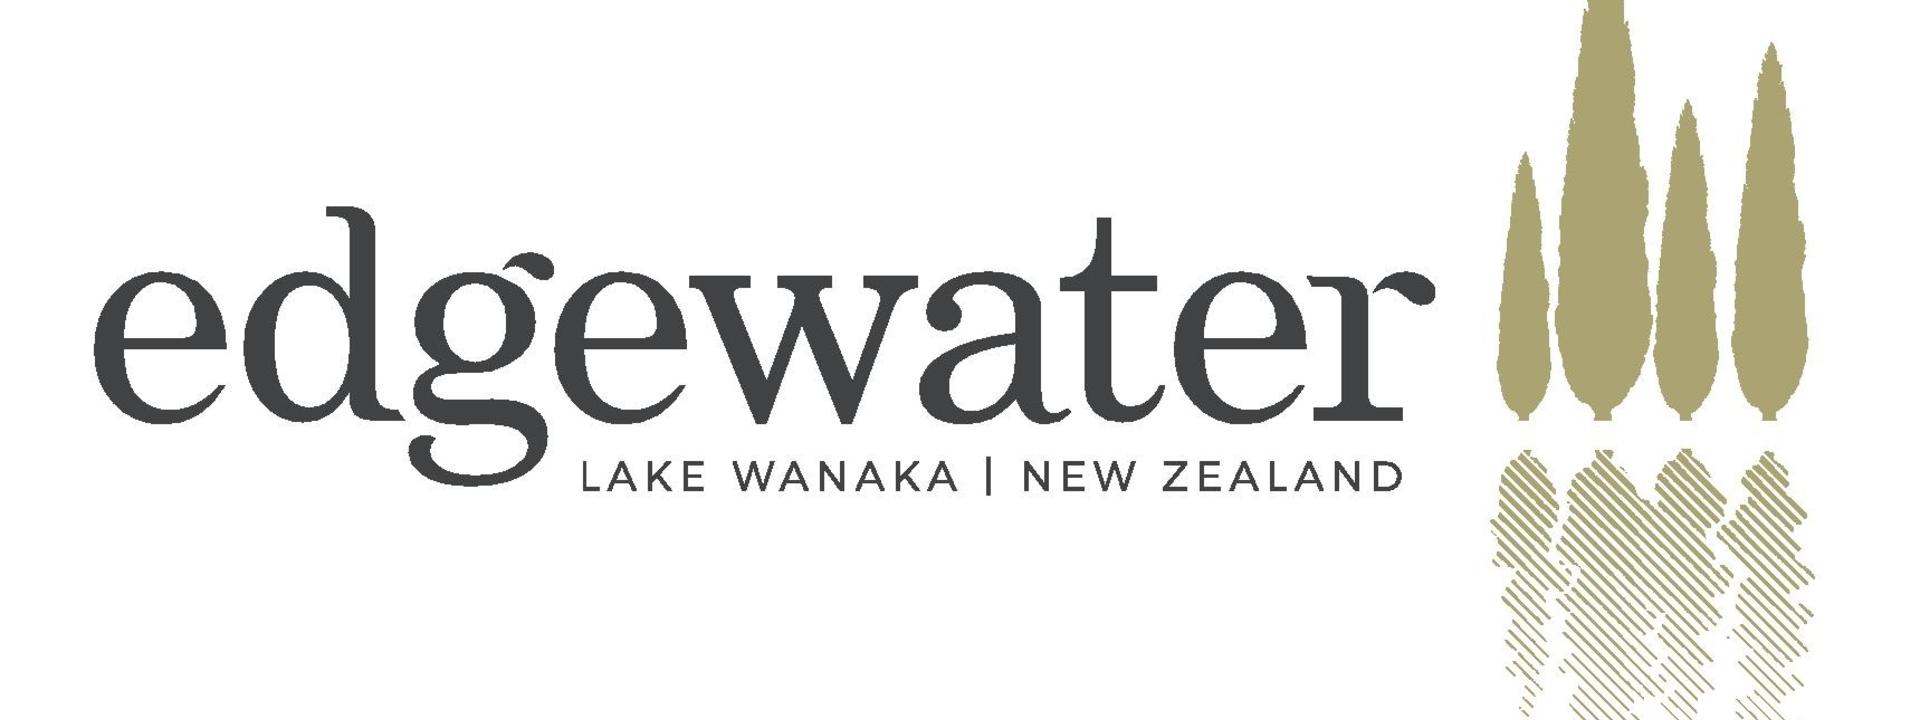 Logo: Edgewater - Lake Wanaka